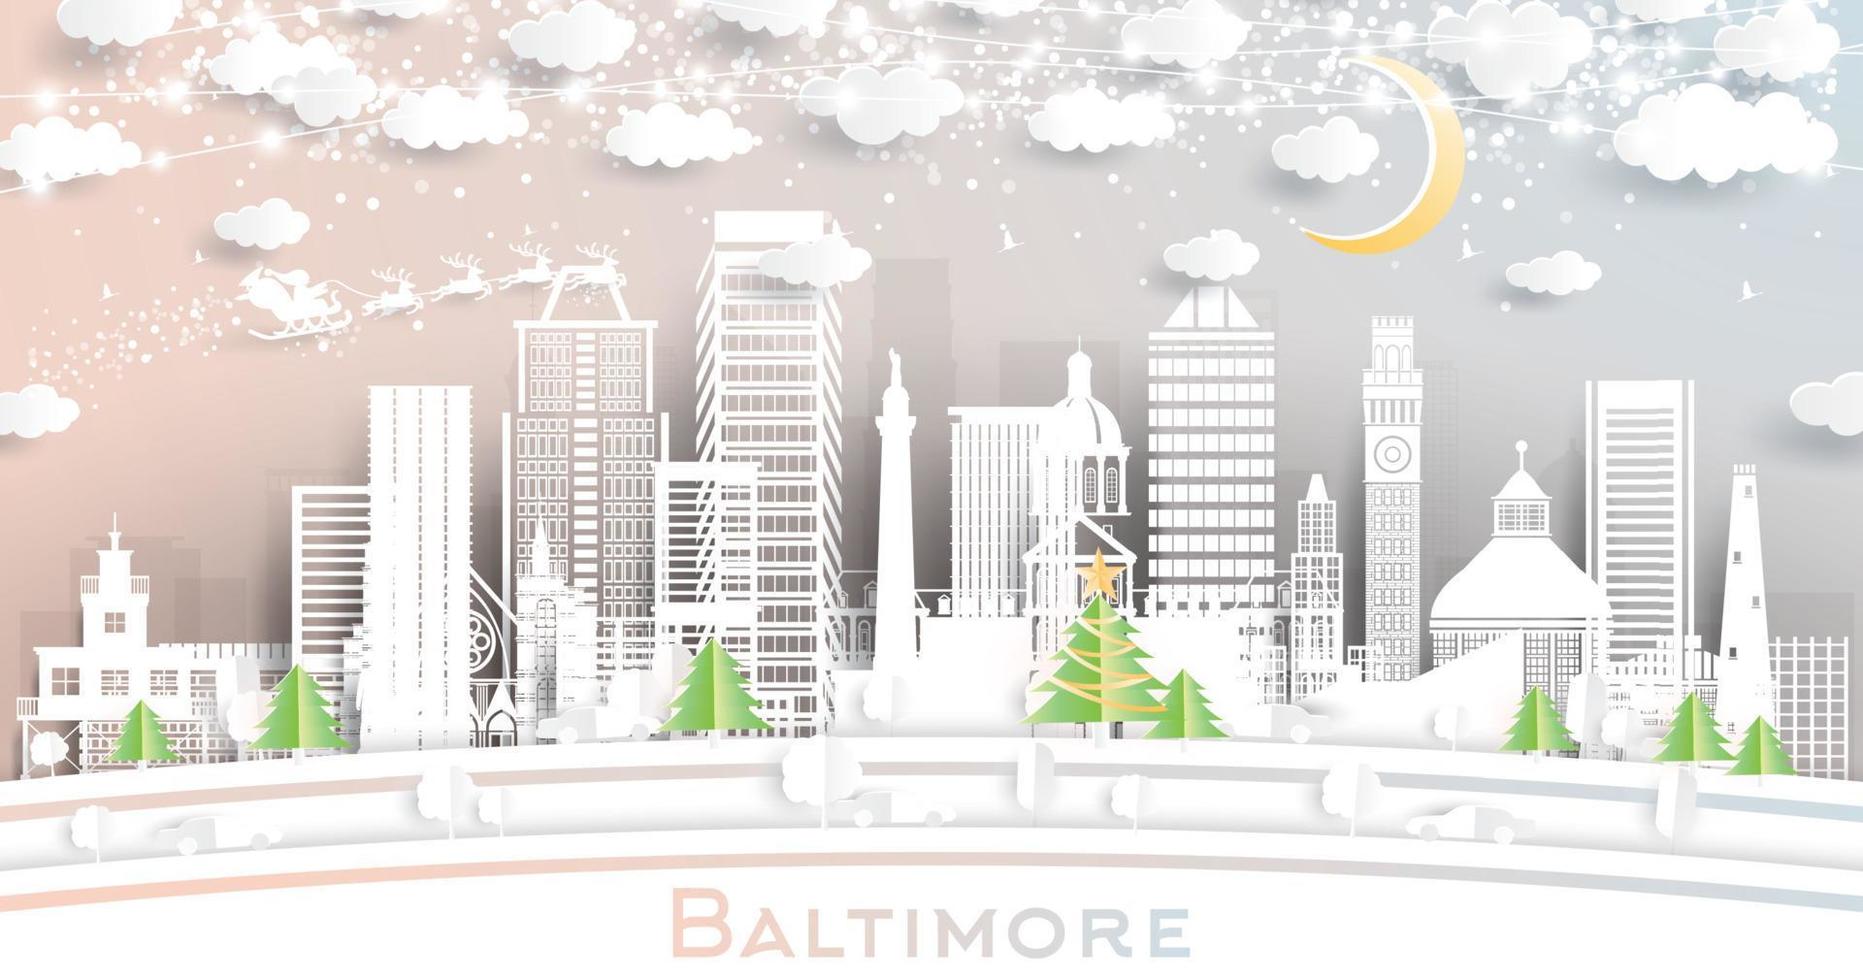 Baltimore Maryland stad horizon in papier besnoeiing stijl met sneeuwvlokken, maan en neon guirlande. vector